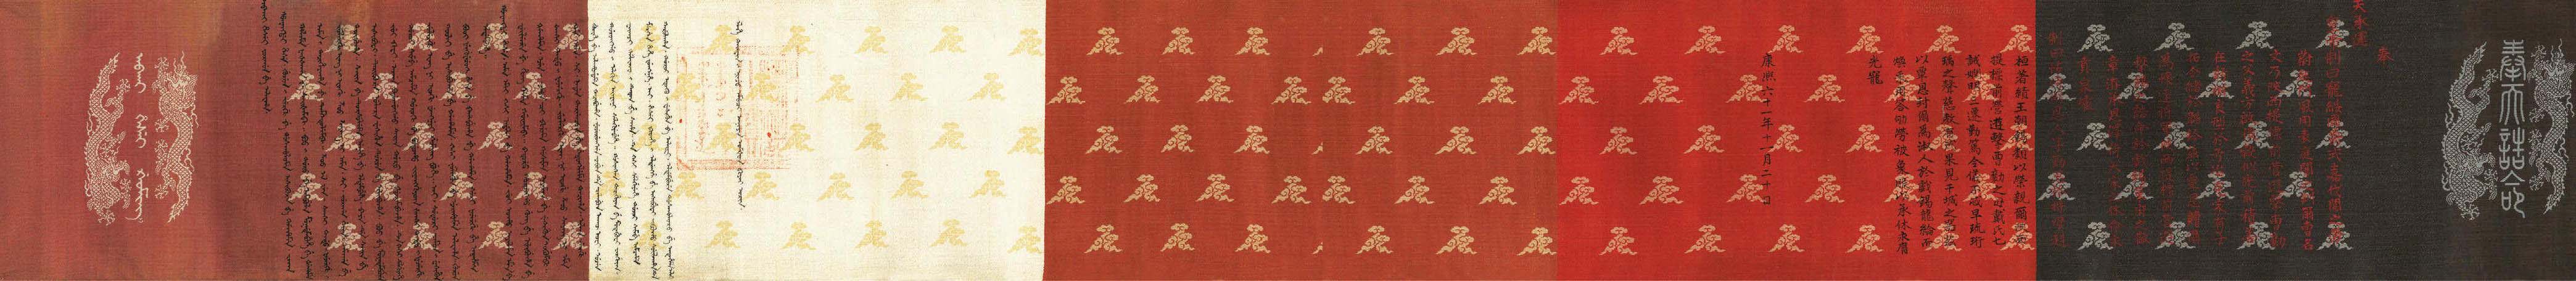 清康熙六十一年封赠陕西提标前营游击曹勷父母的诰命(1722年12月27日)